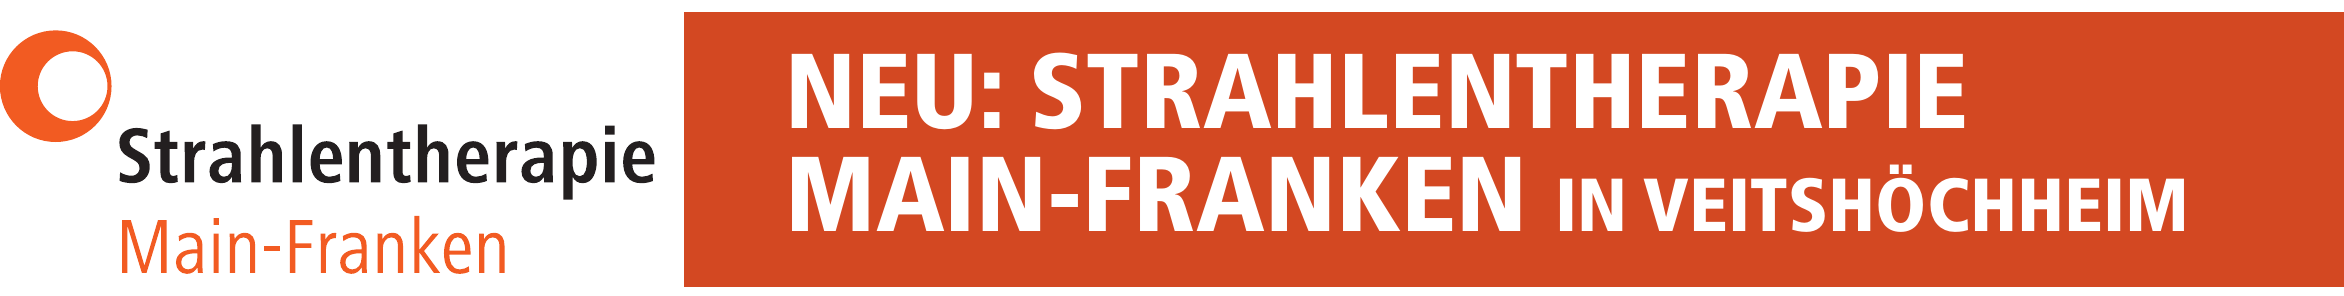 Neu: Strahlentherapie Main-Franken in Veitshöchheim Image 1